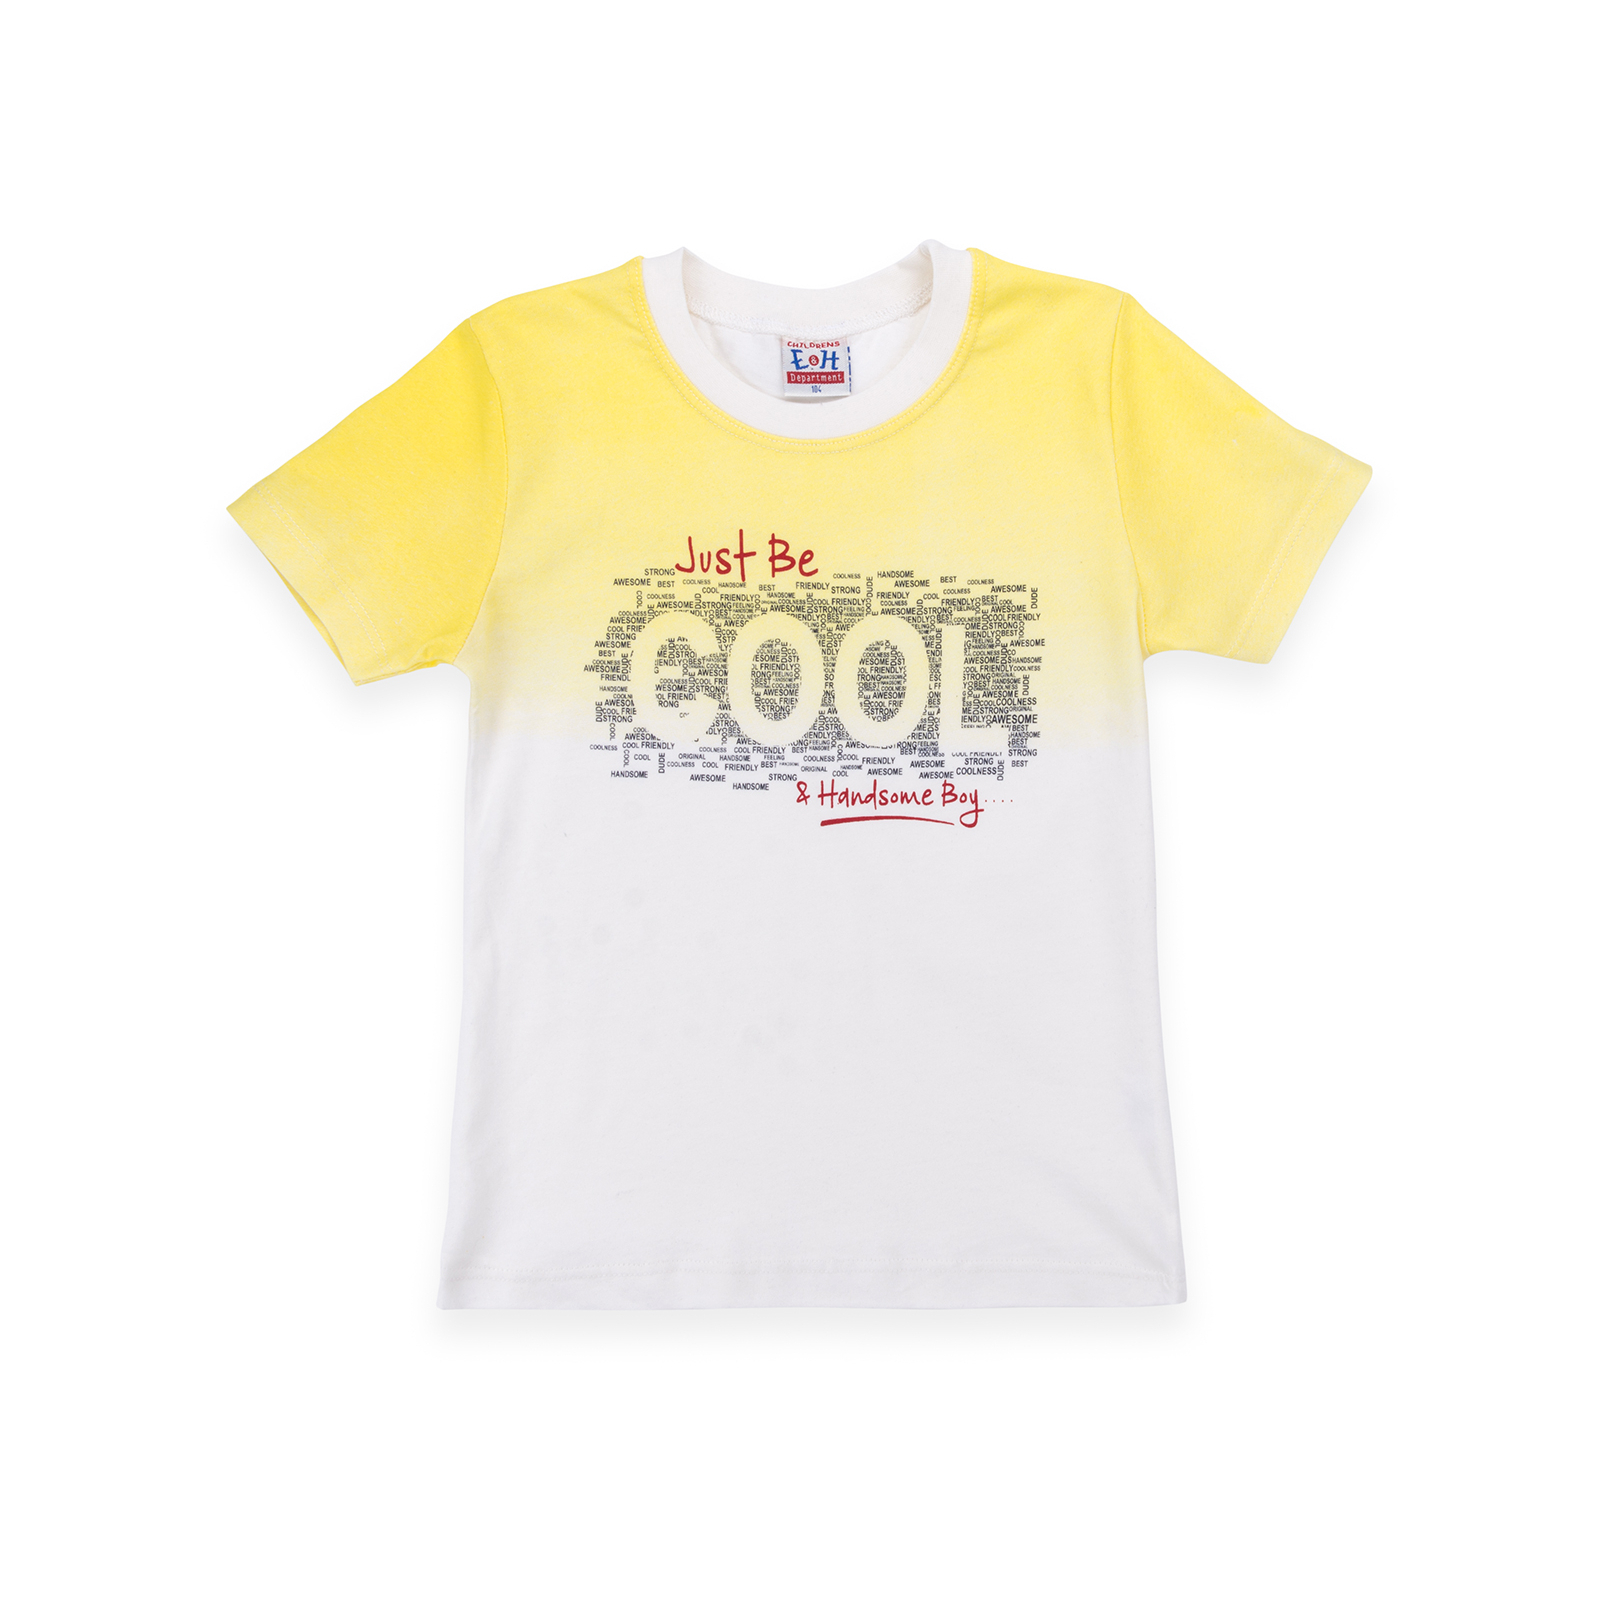 Набор детской одежды Breeze футболка "COOL" с шортами (8867-98B-yellow) изображение 2